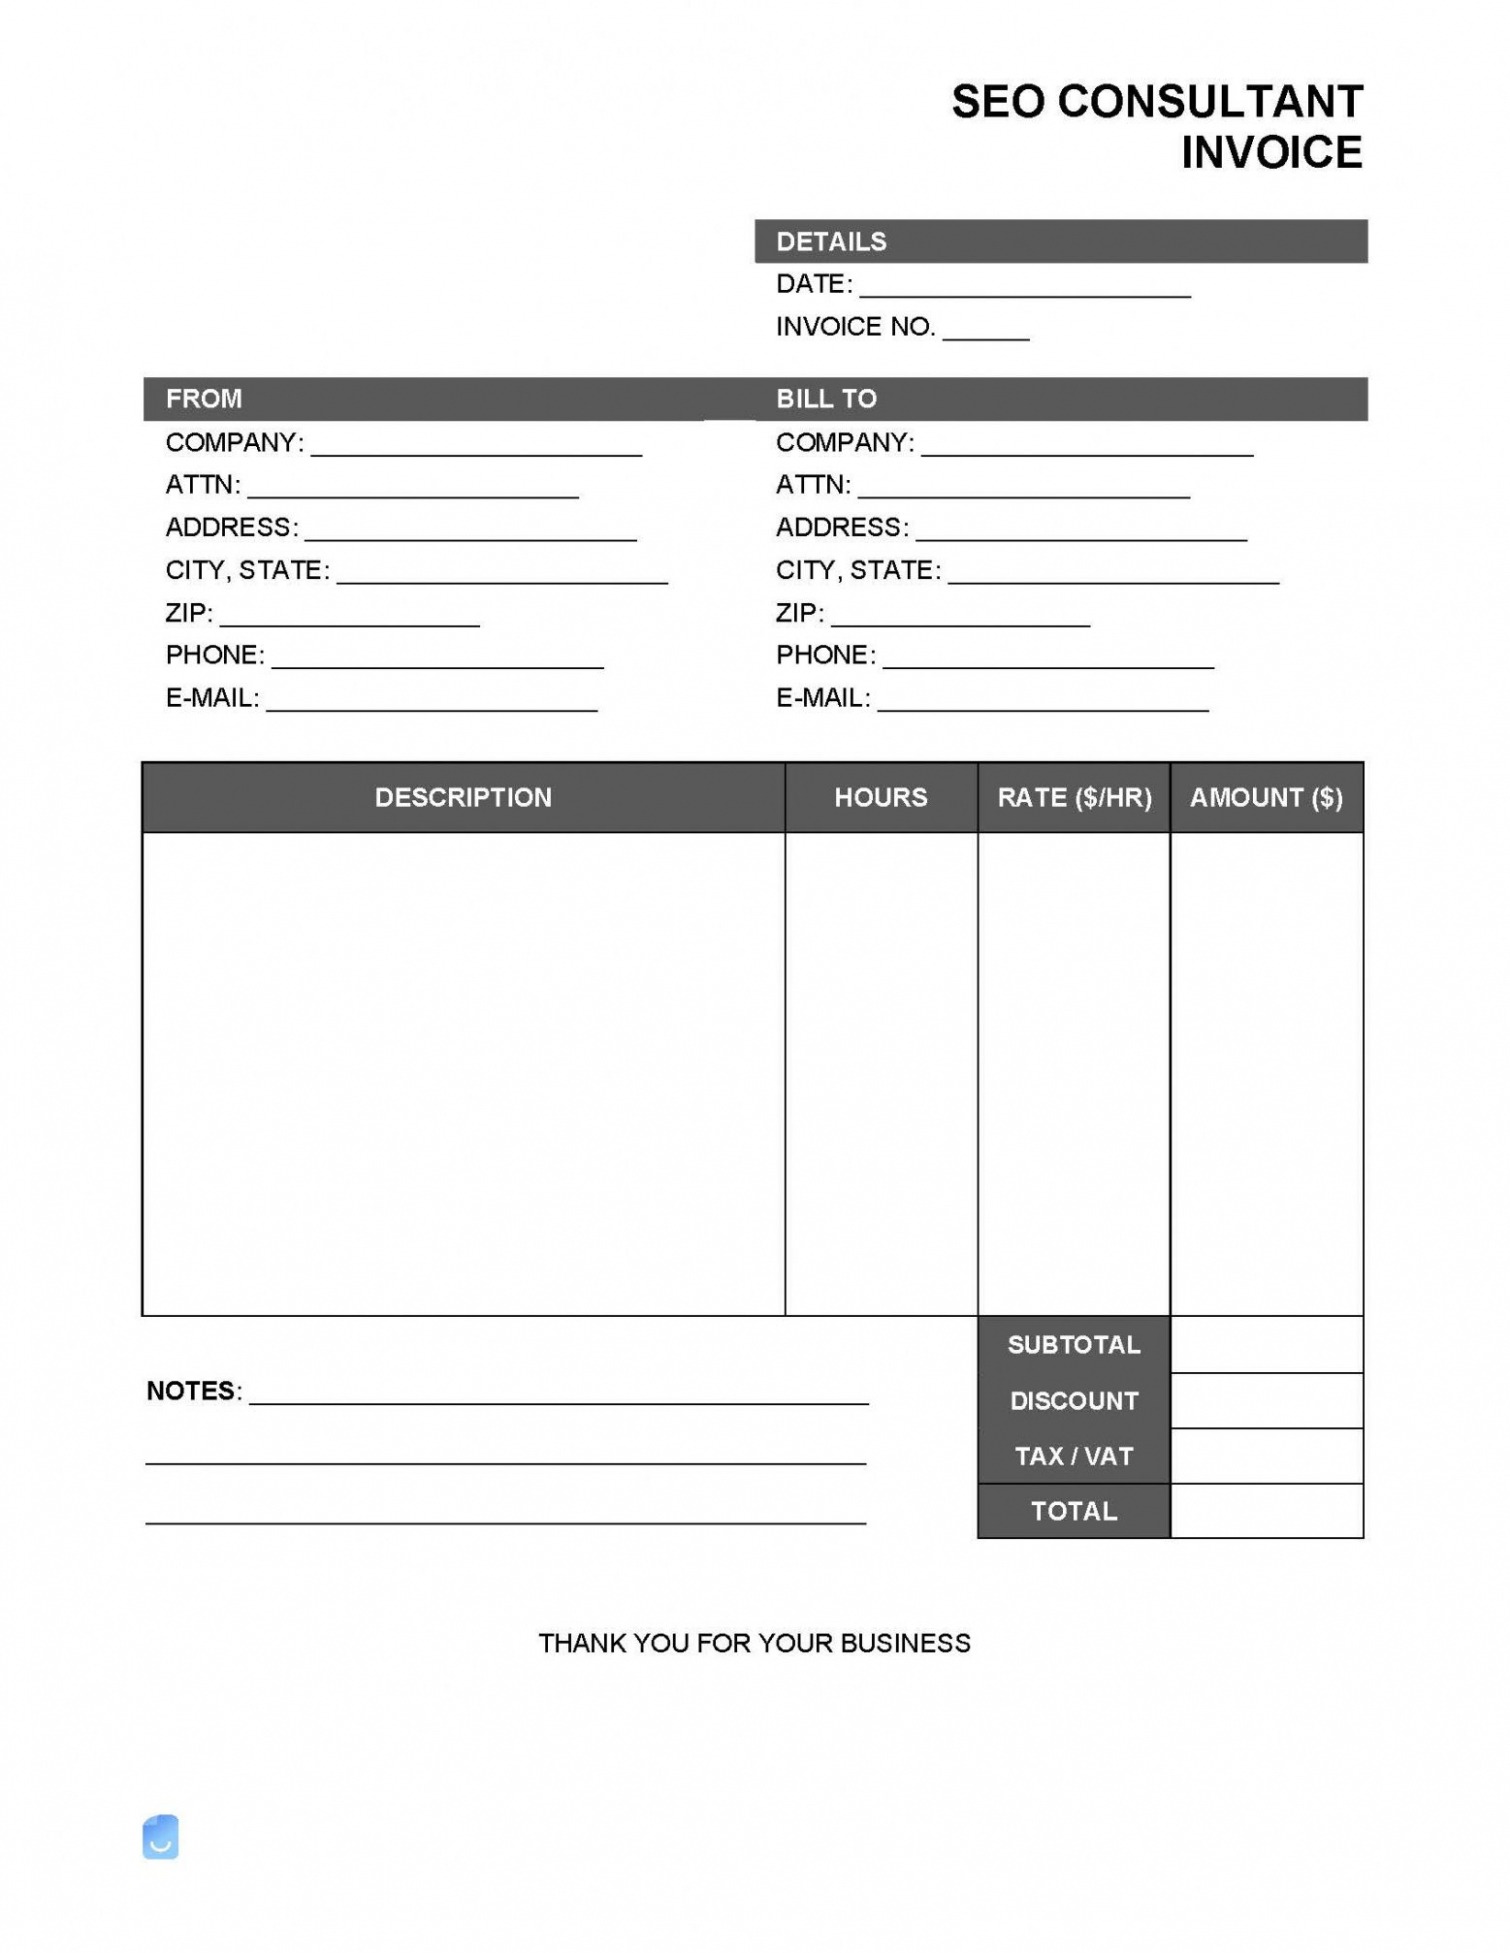 Sample Seo Invoice Template PDF